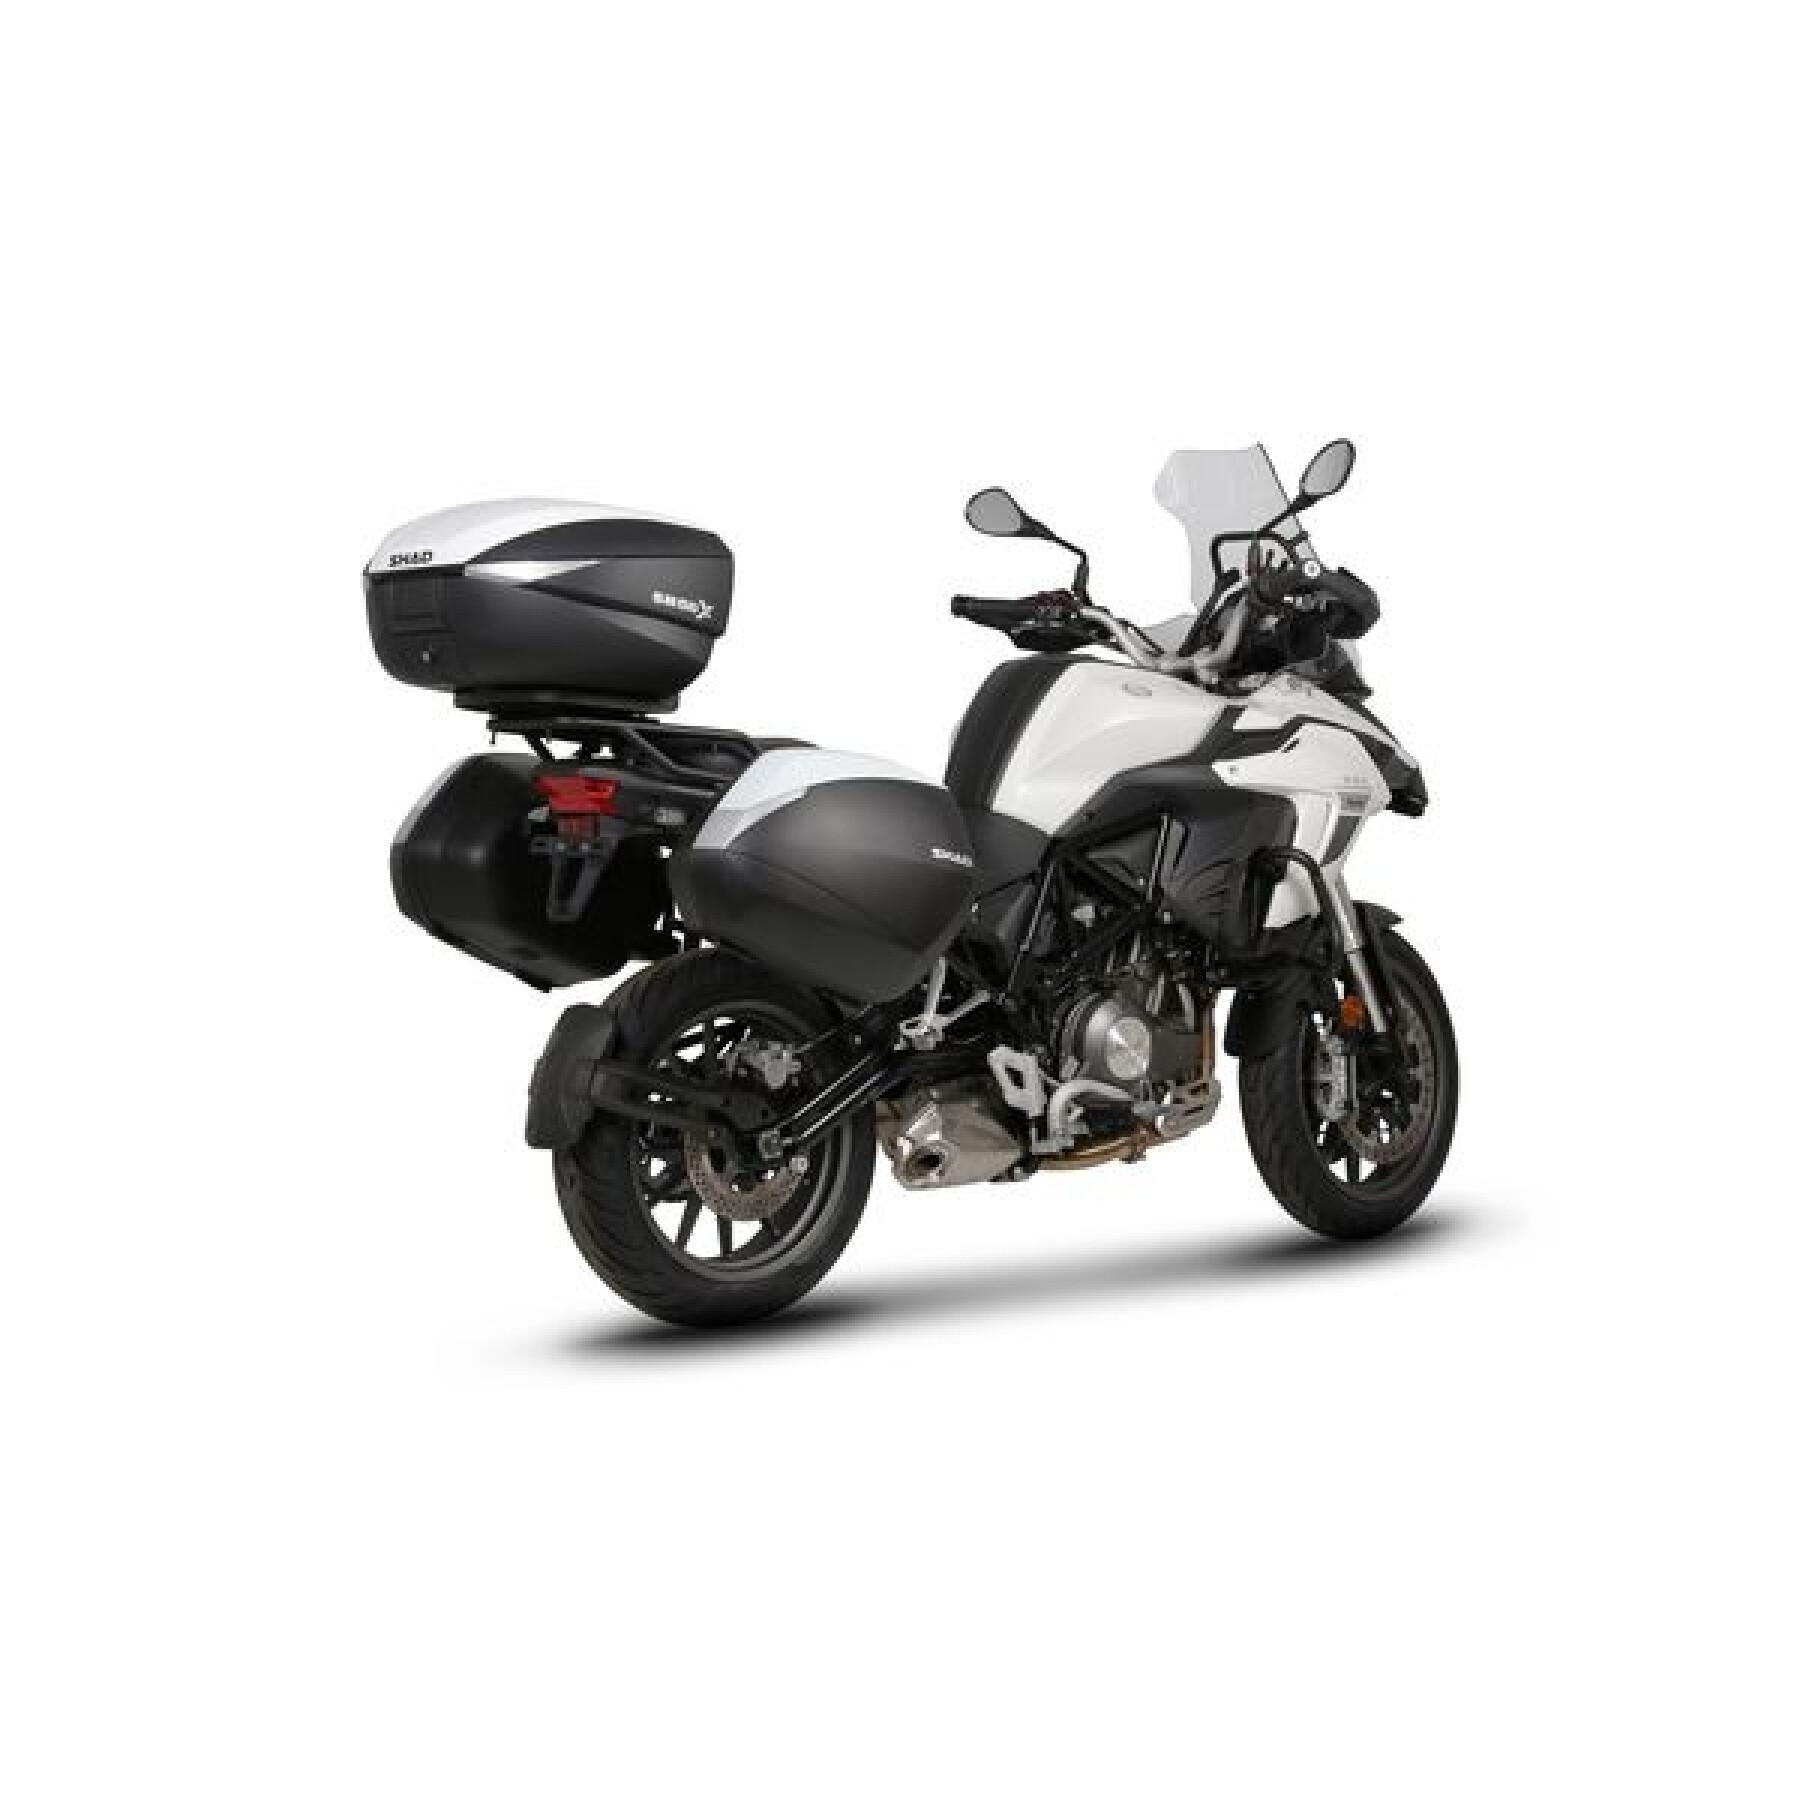 Wspornik kufra bocznego motocykla Shad 3P System Benelli Trk 502 (17 do 21)